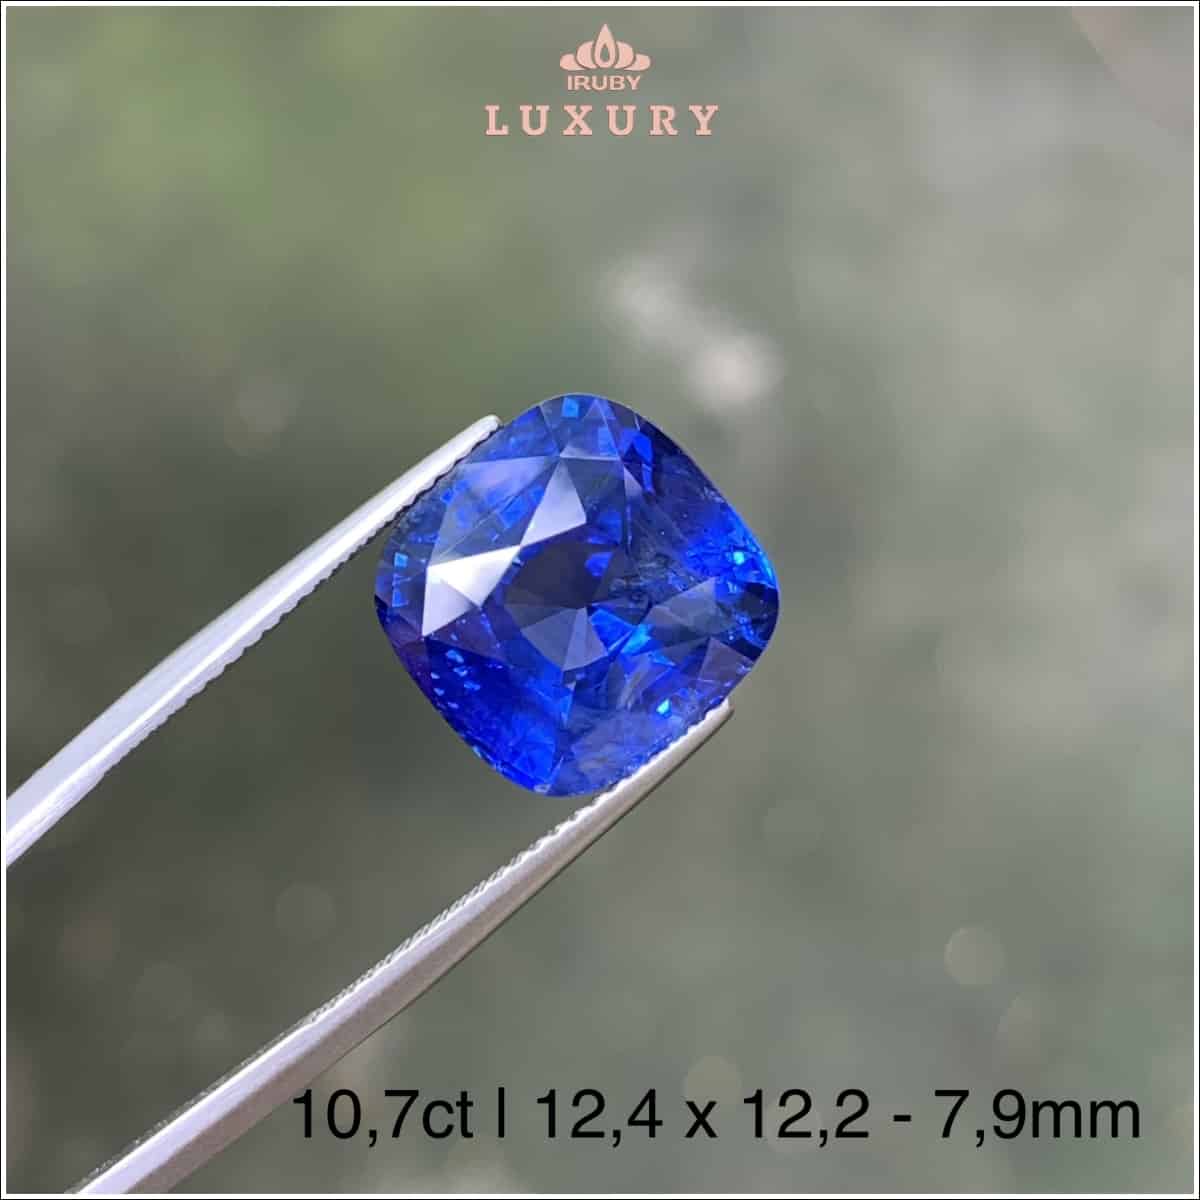 Viên Sapphire xanh lam Hoàng Gia VIP 10,7ct phân khúc Luxury IRBS129 - 238107 hình ảnh